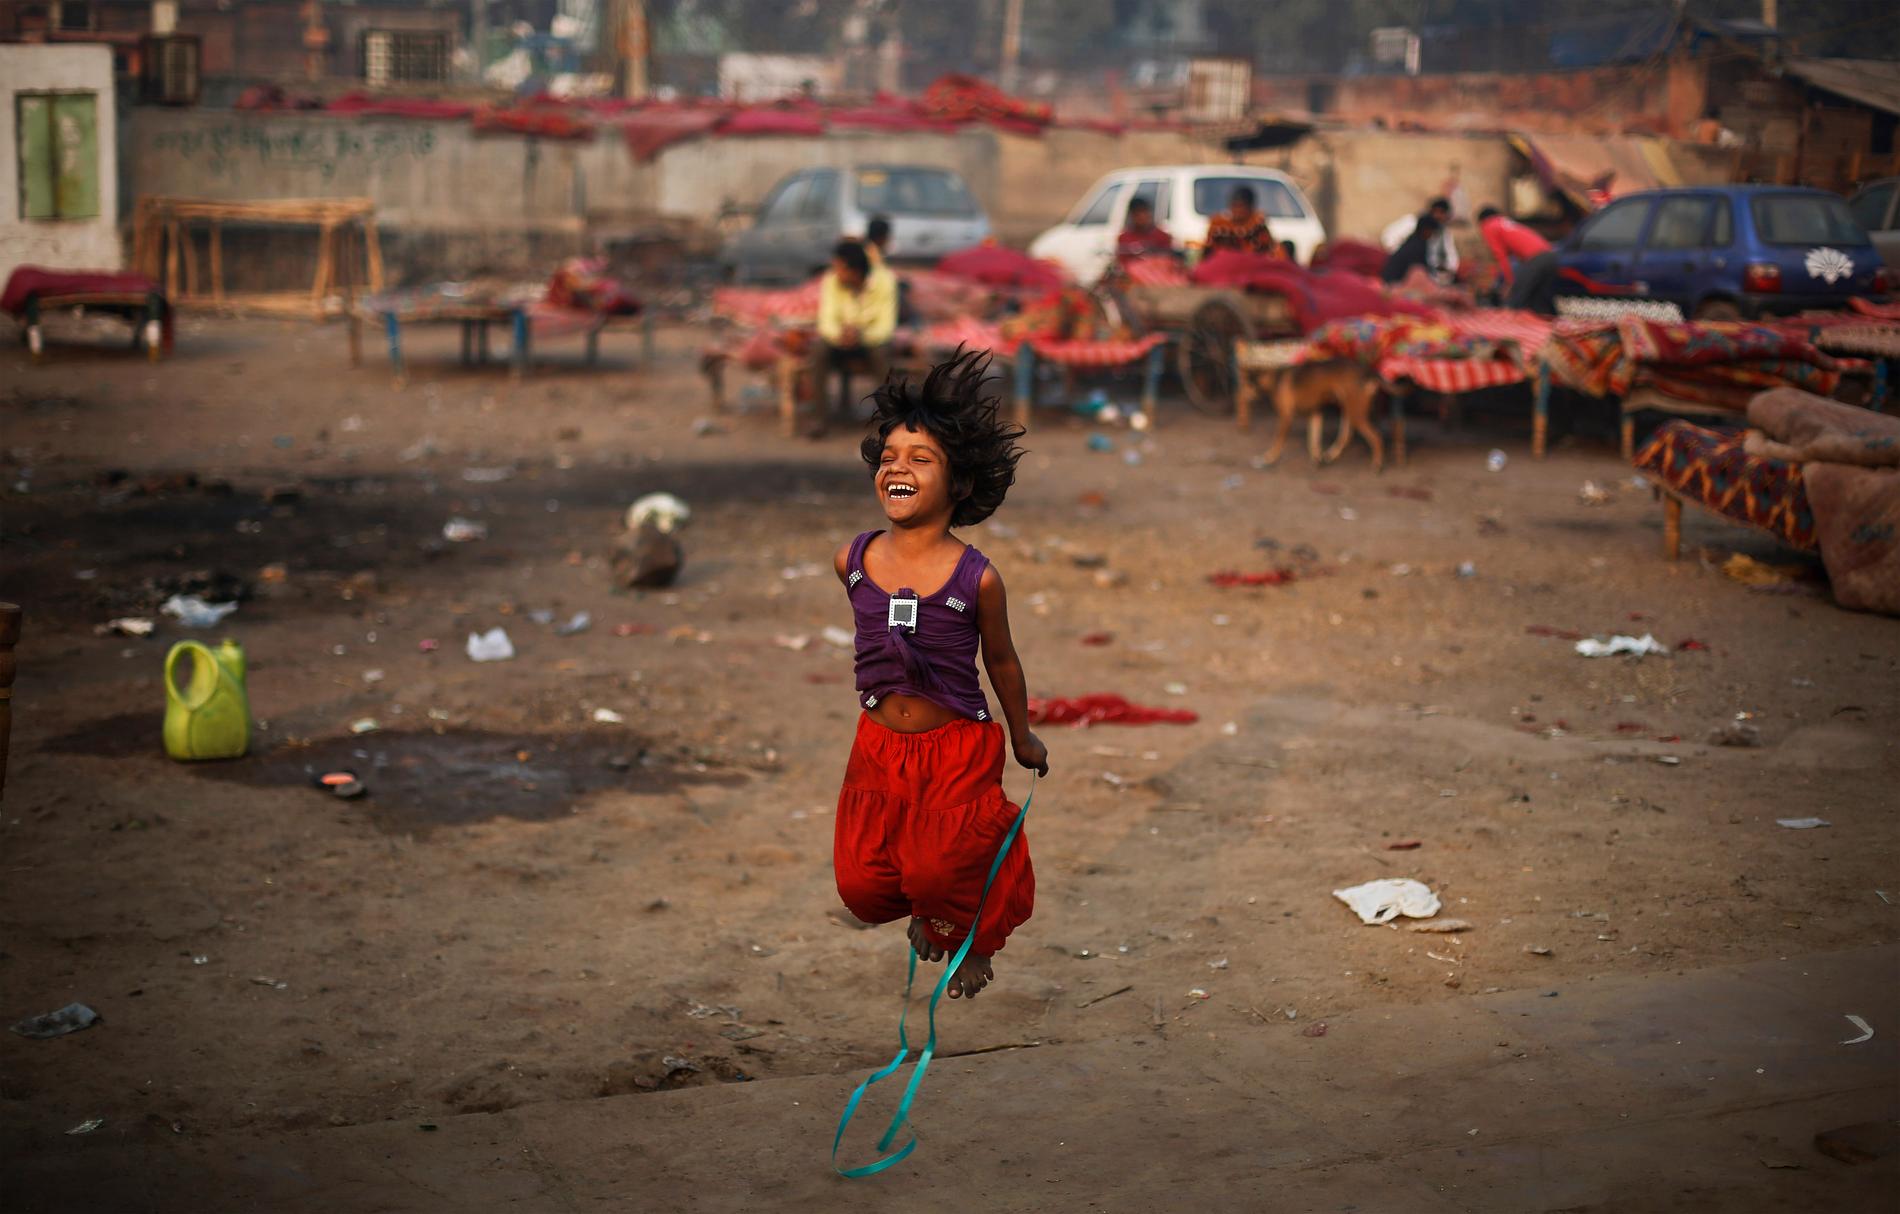 En flicka leker med ett hopprep intill en tillfällig bosättning i New Delhi, Indien. Landet har länge varit det land i världen med flest antal fattiga, men på senare år har andelen som lever i fattigdom minskat.